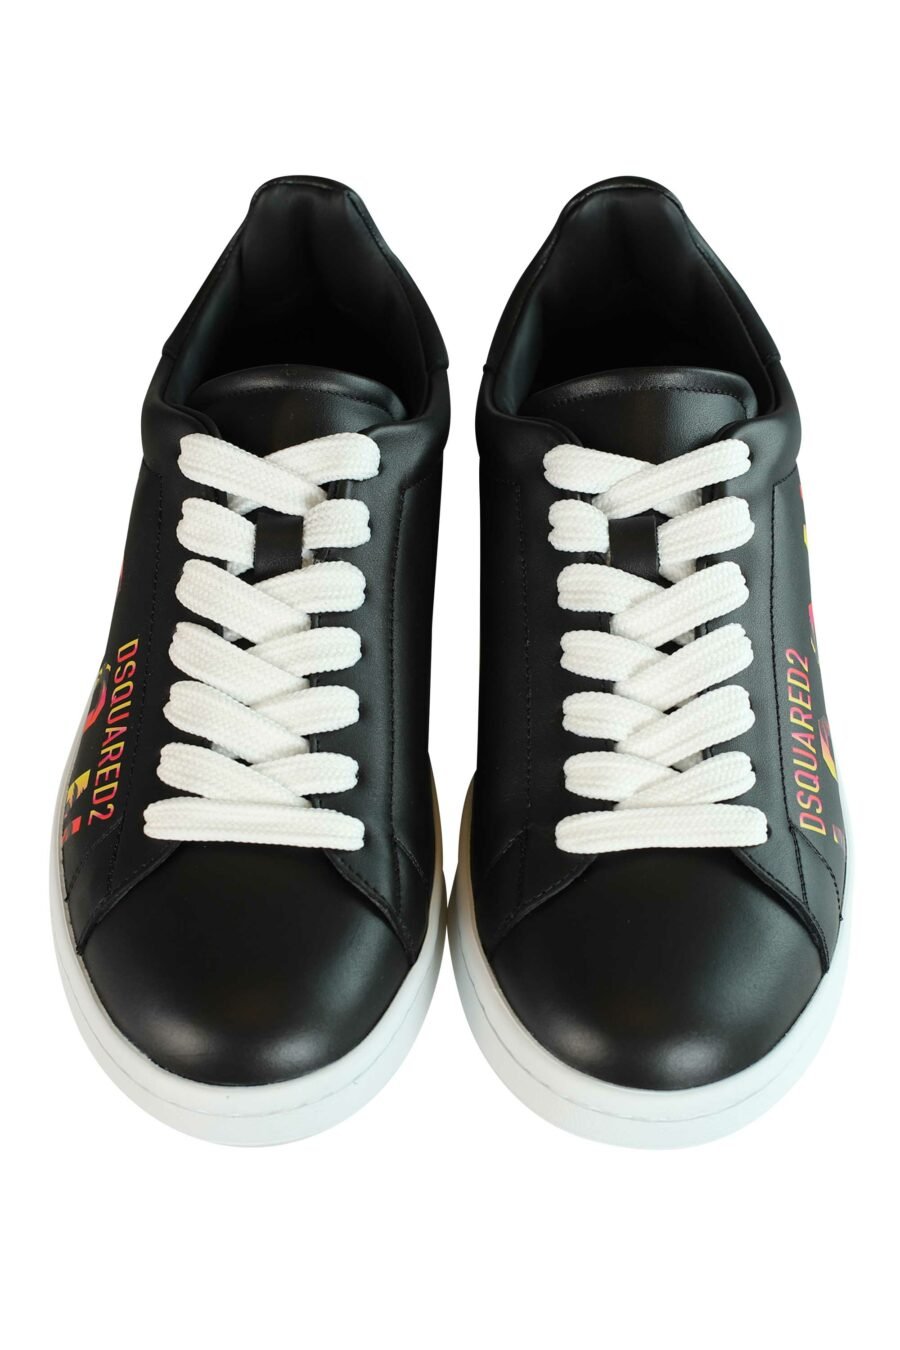 Zapatillas negras "boxer" con logo "icon sunset" - 8055777184479 5